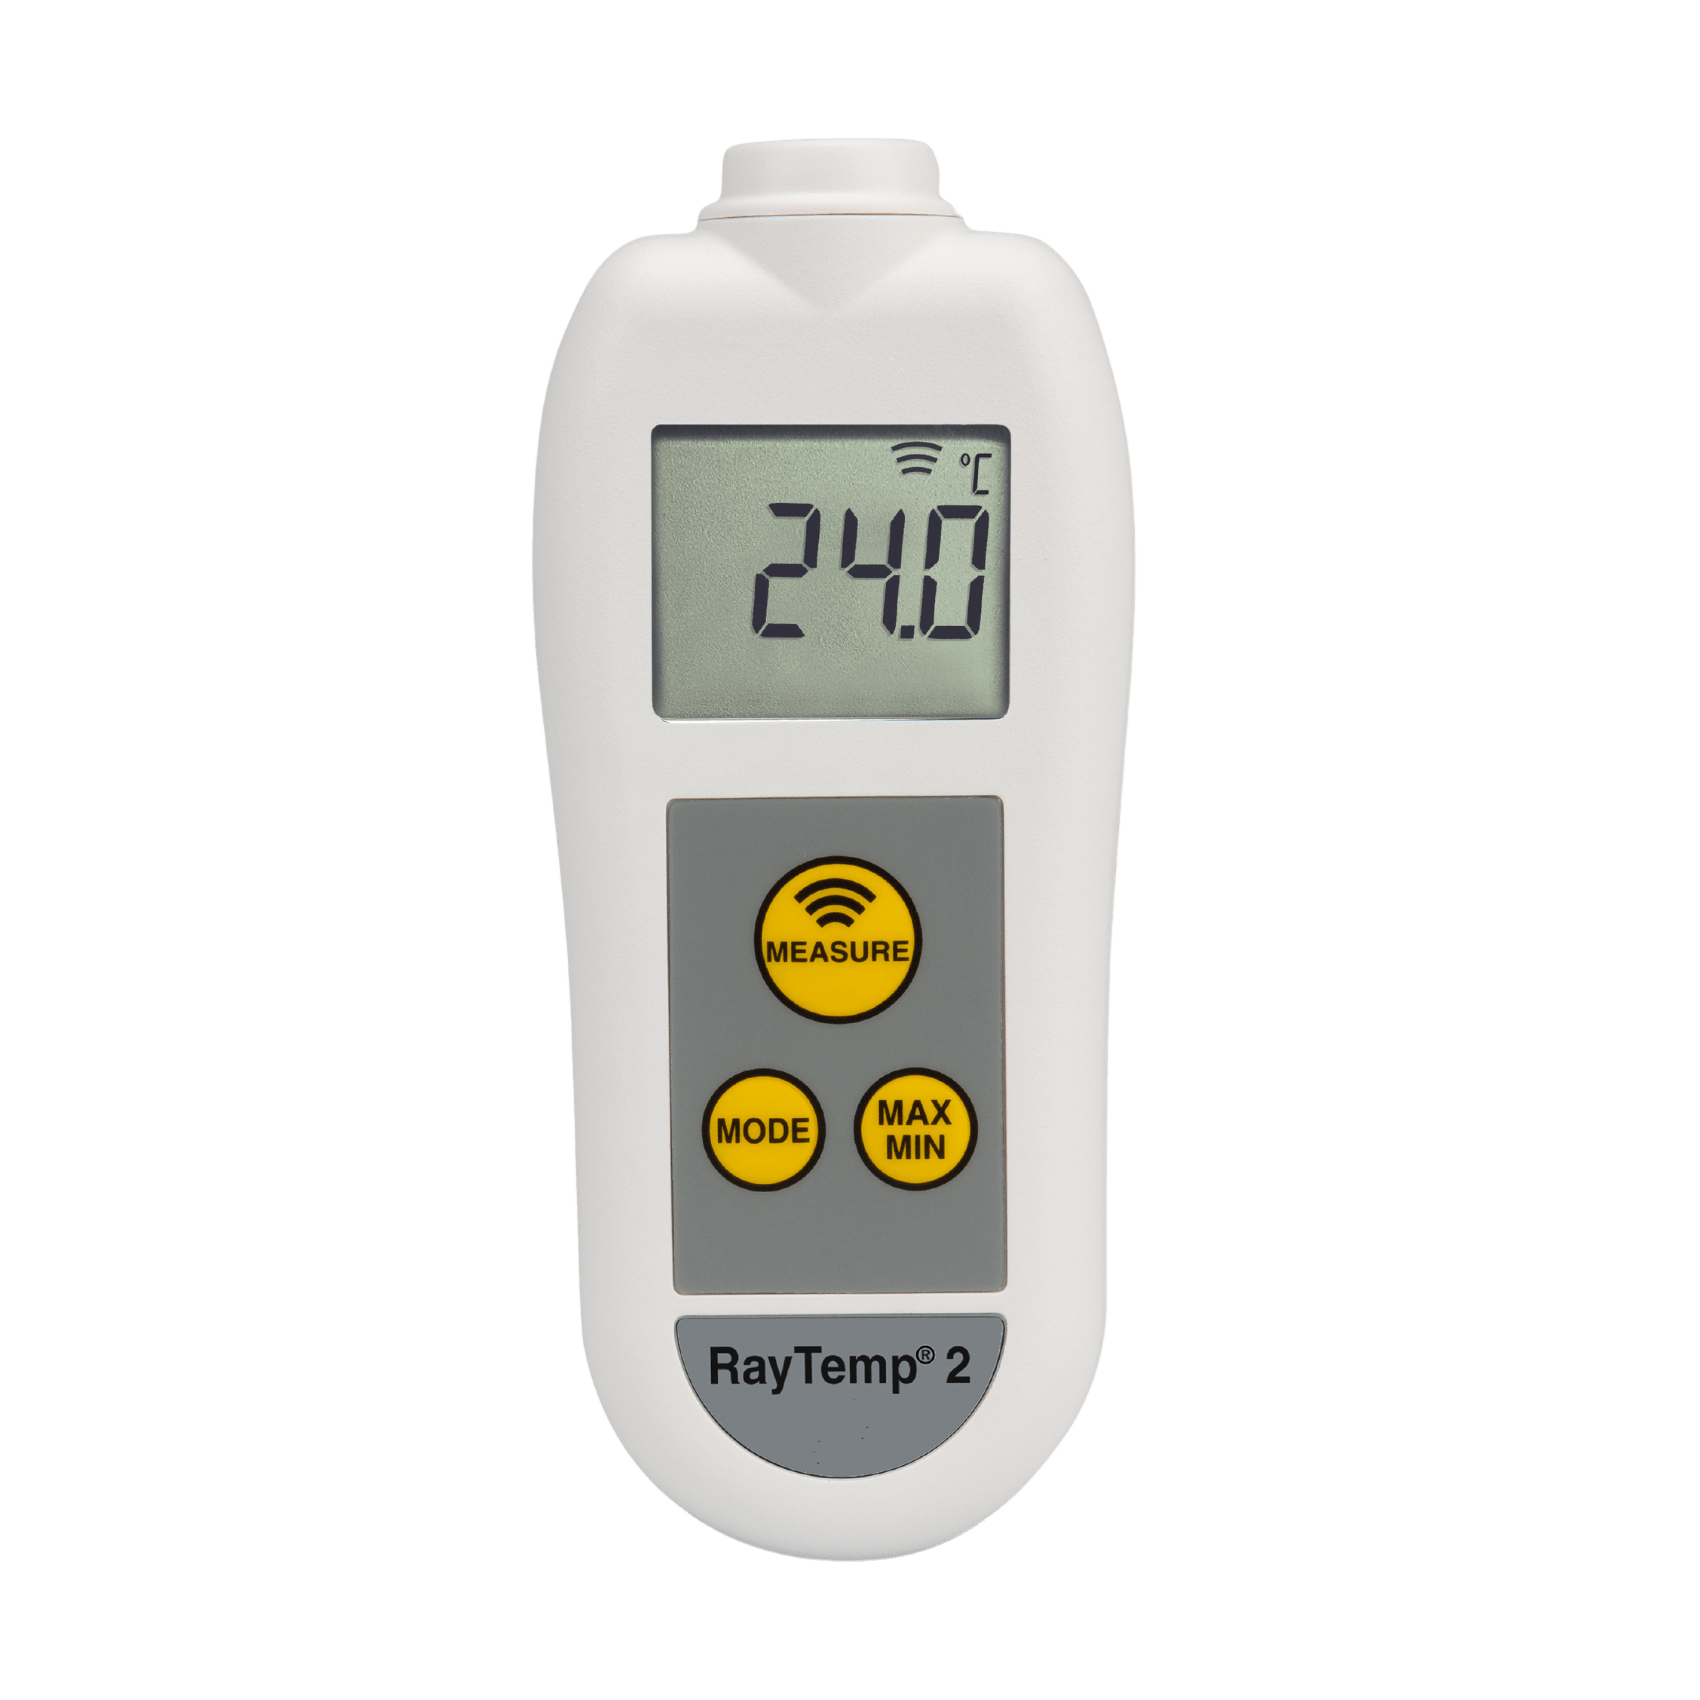 Thermomètre infrarouge numérique avec alarme haute température-Infrared